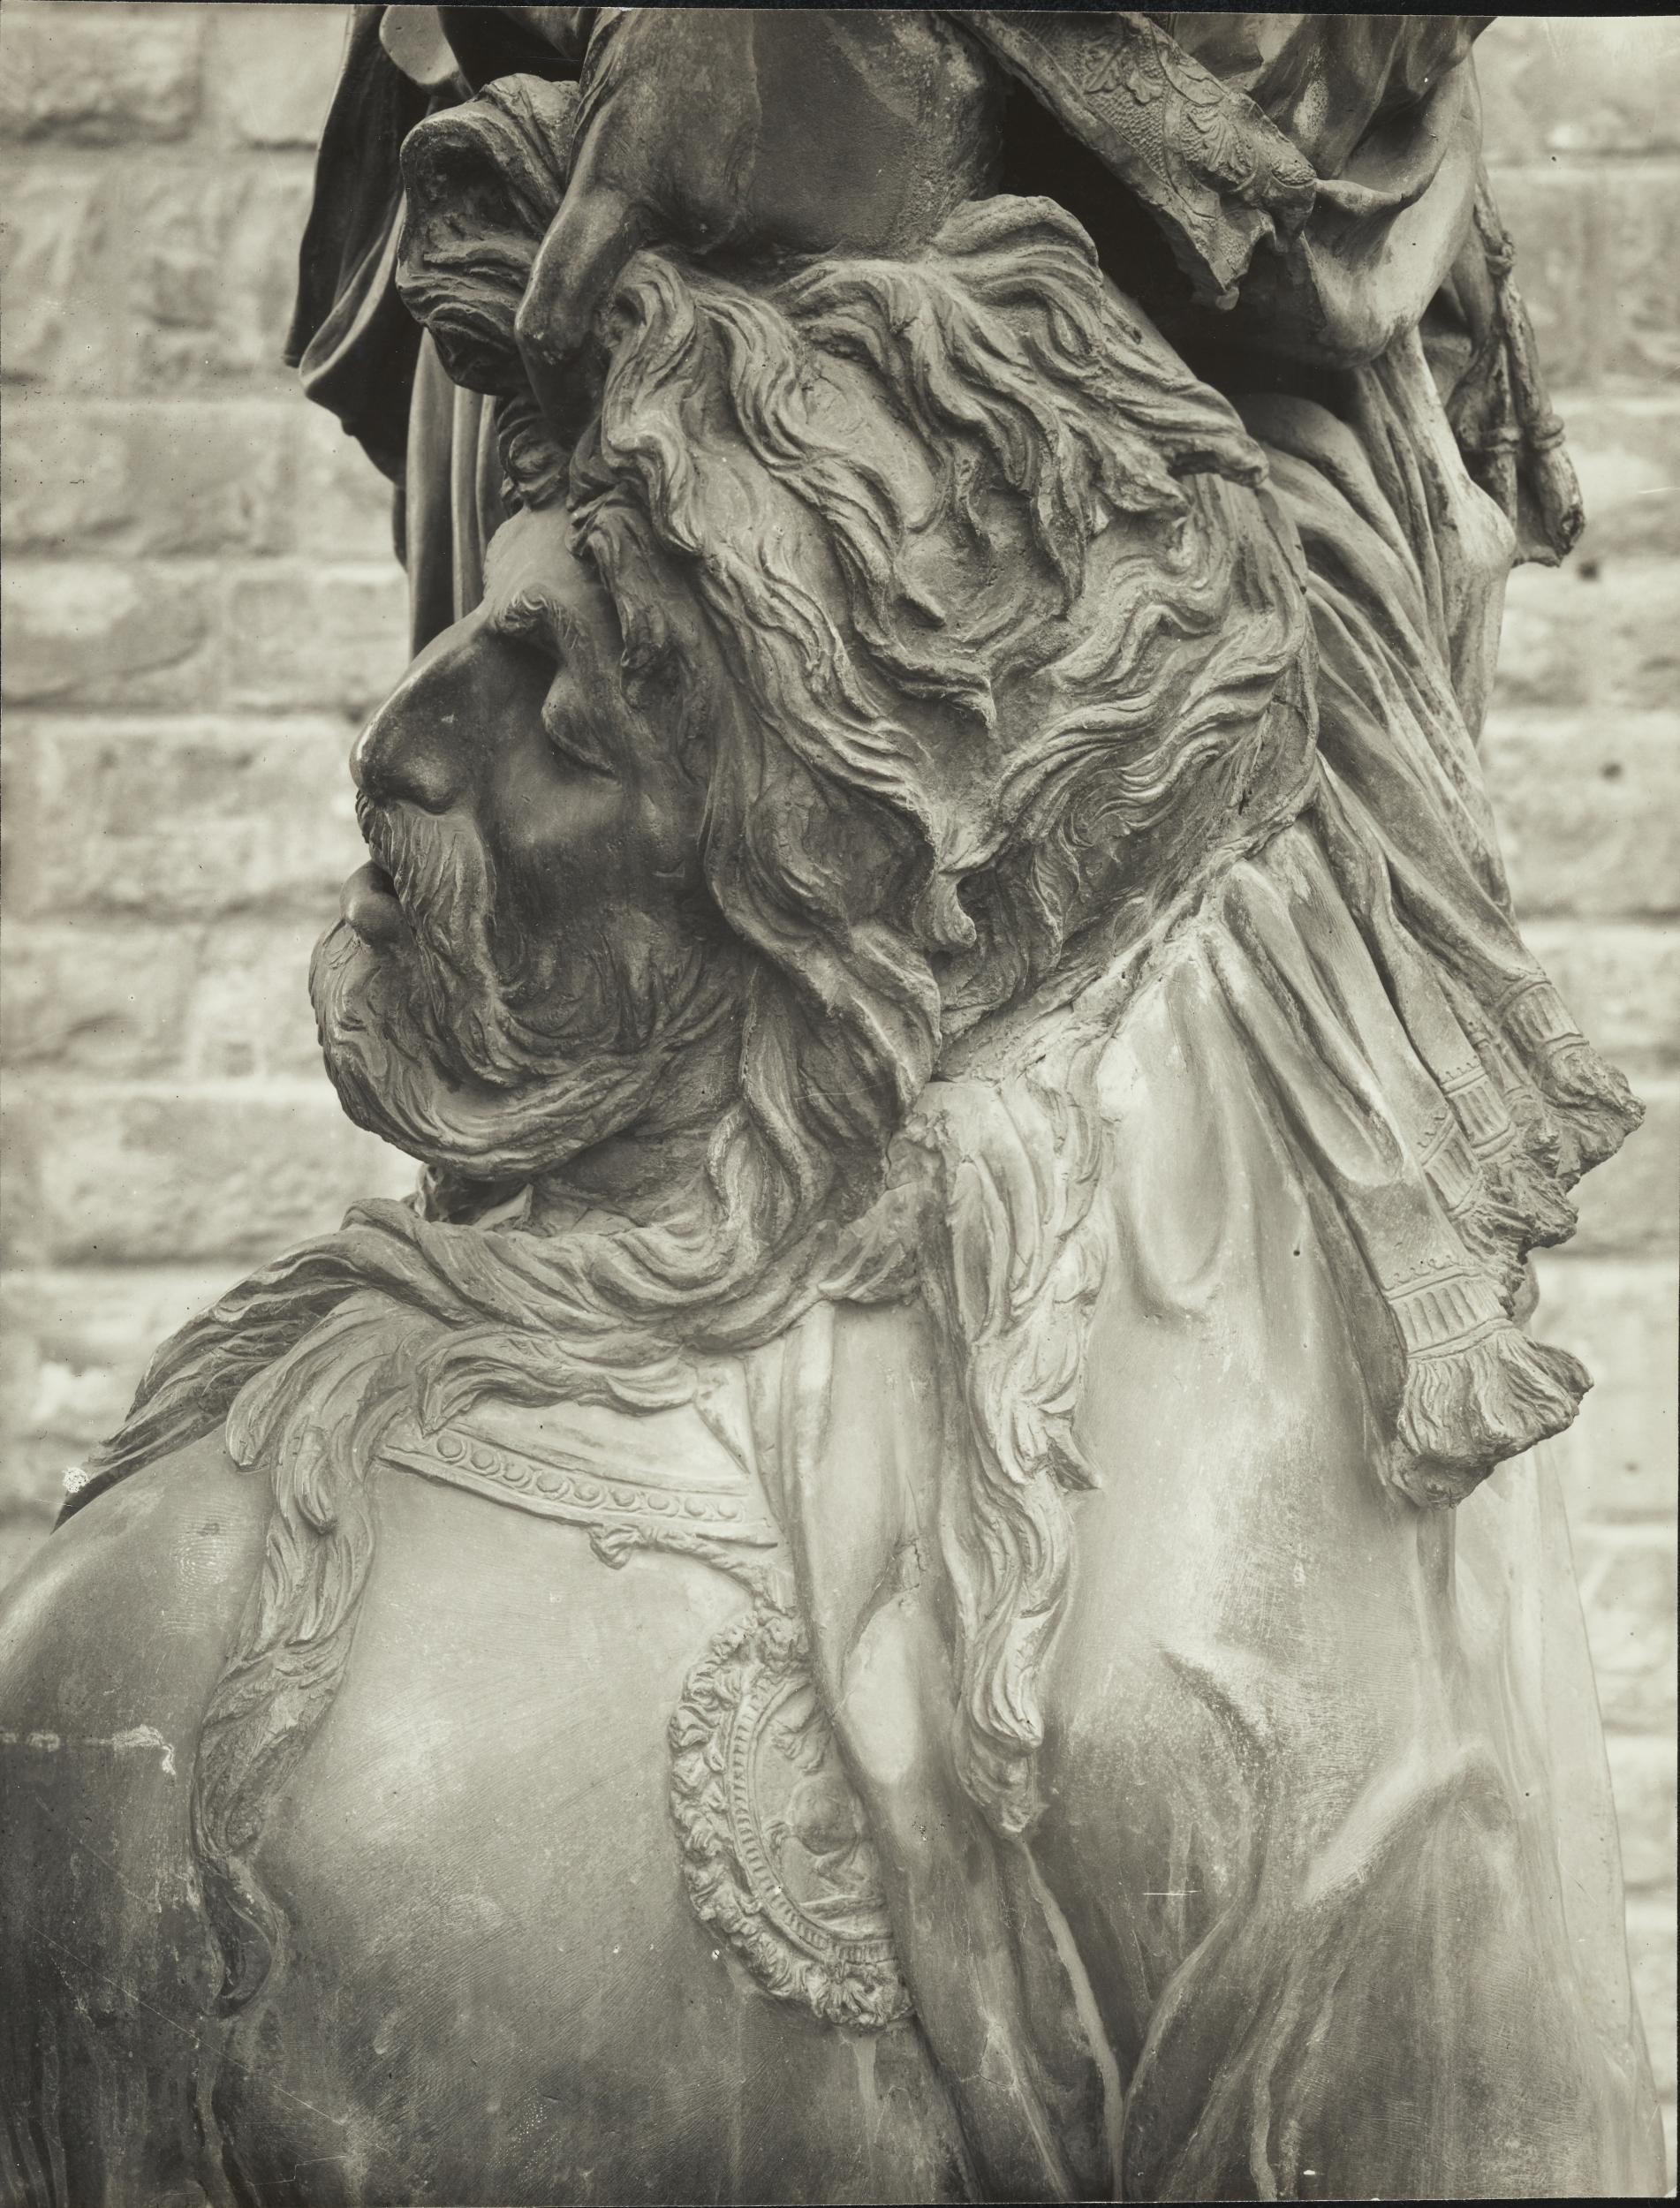 Gino Malenotti, Firenze - Piazza della Signoria, La Giuditta oggi a Palazzo Vecchio, la figura di Oloferne, 1931- 1938, gelatina ai sali d'argento, MPI6022147